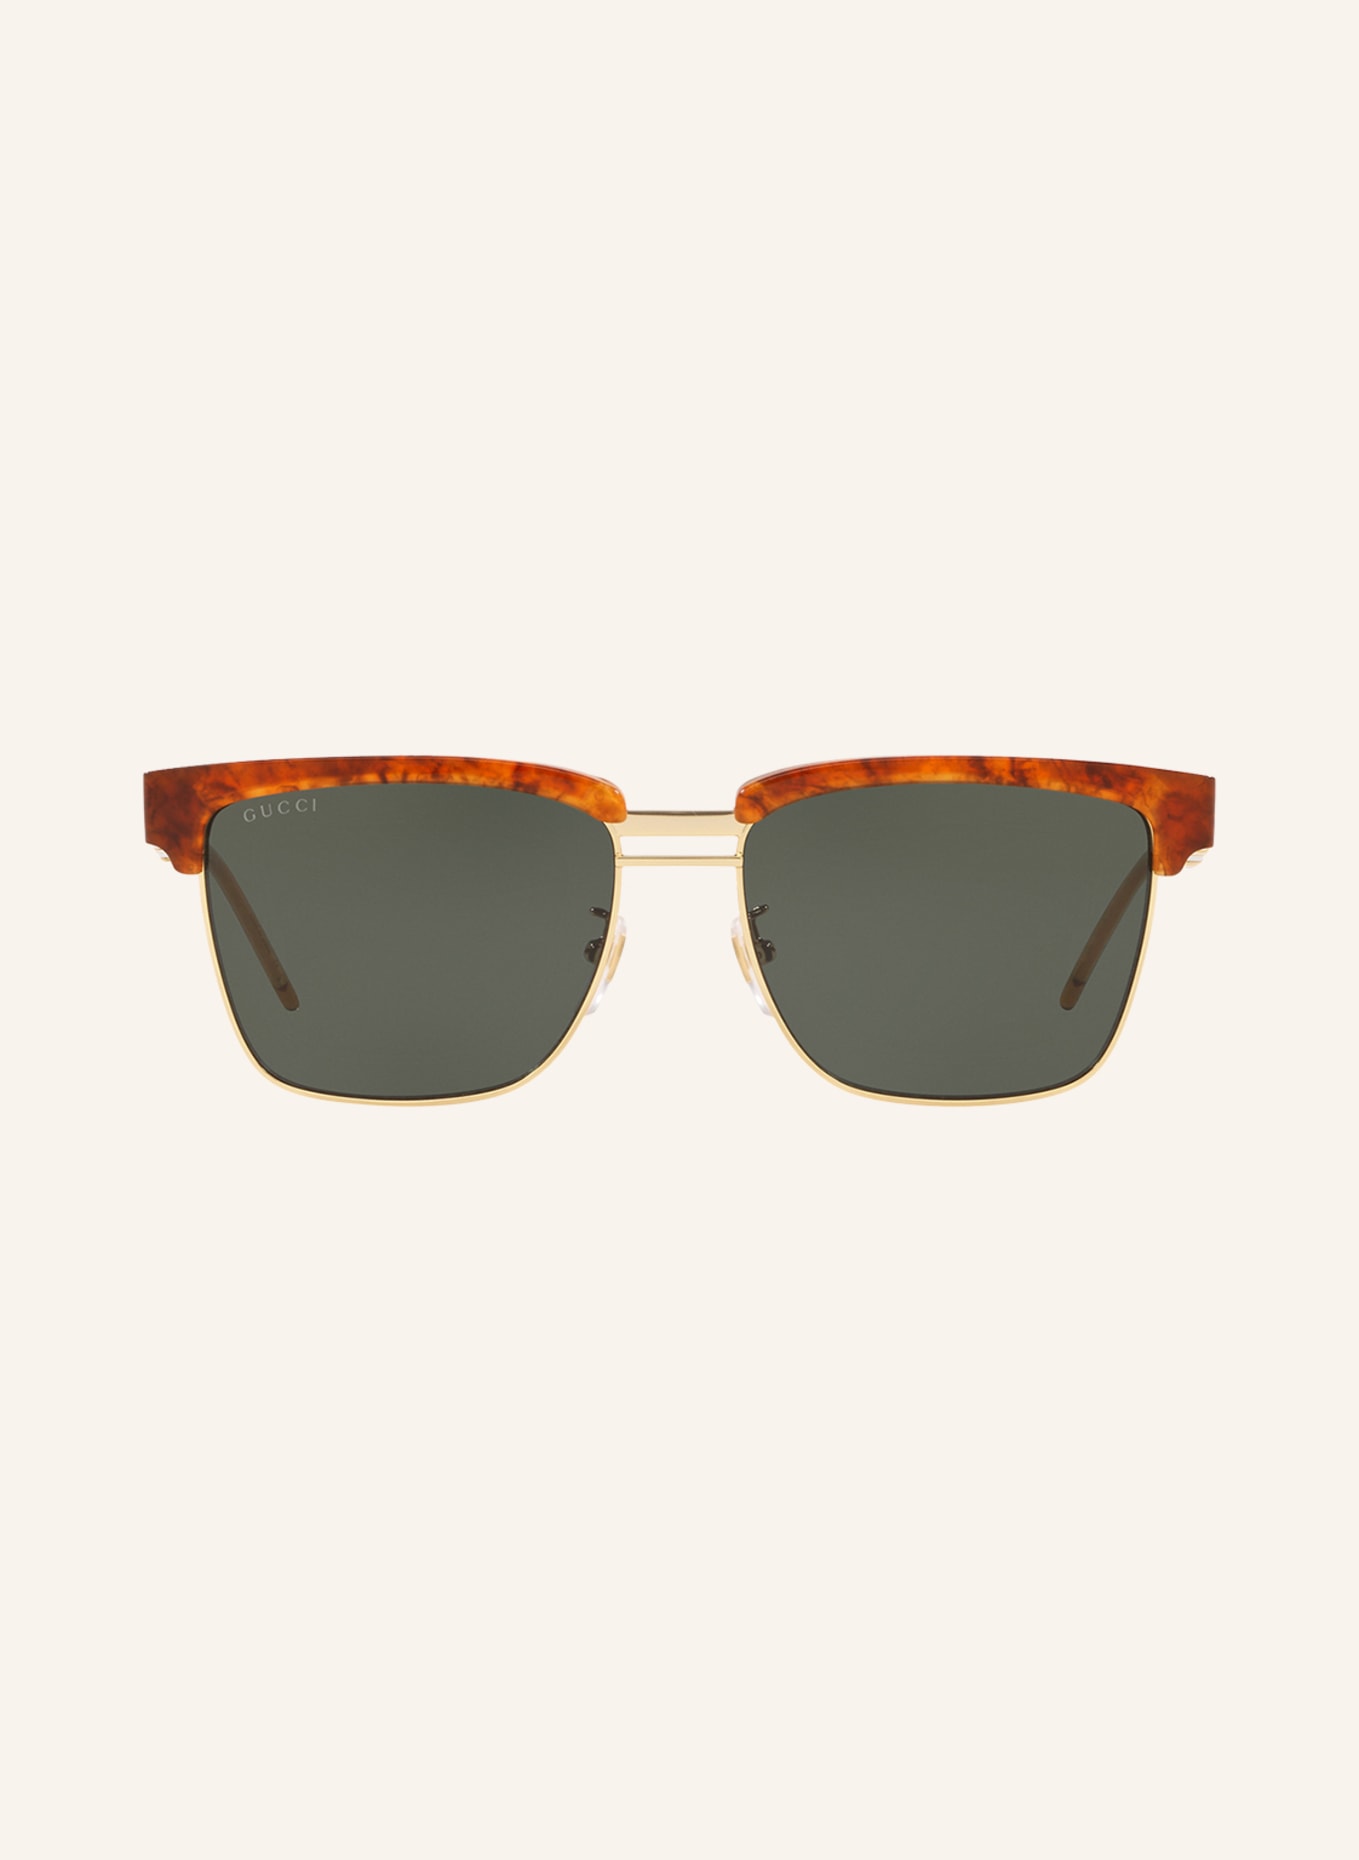 GUCCI Sunglasses GG0603S, Color: 4402J1 - HAVANA/GOLD/DARK GRAY (Image 2)